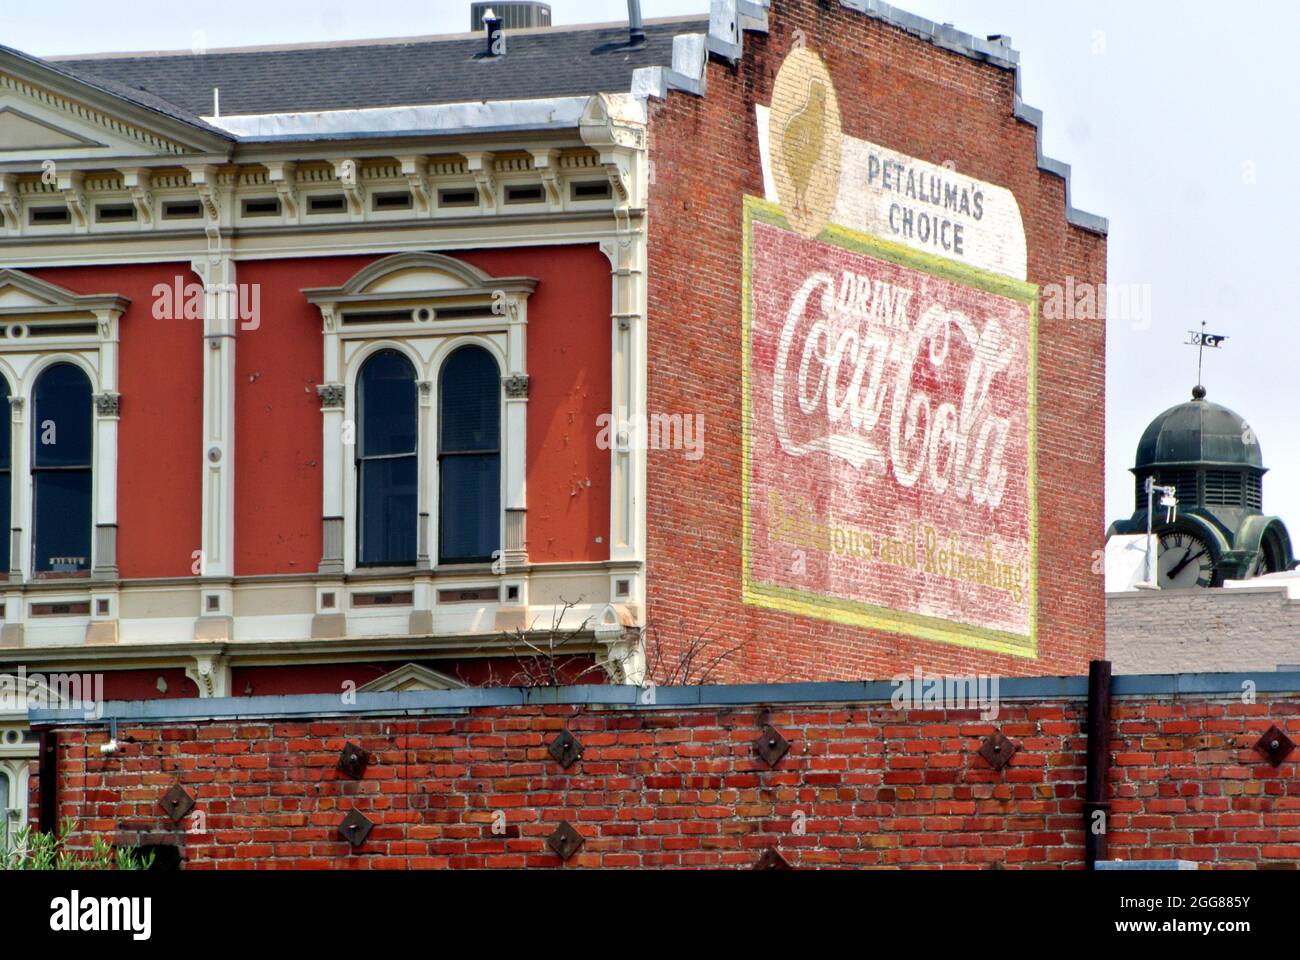 Vista del centro de la pequeña ciudad histórica de Petaluma Califonia USA Edificios con un clásico cartel publicitario de coca cola Foto de stock